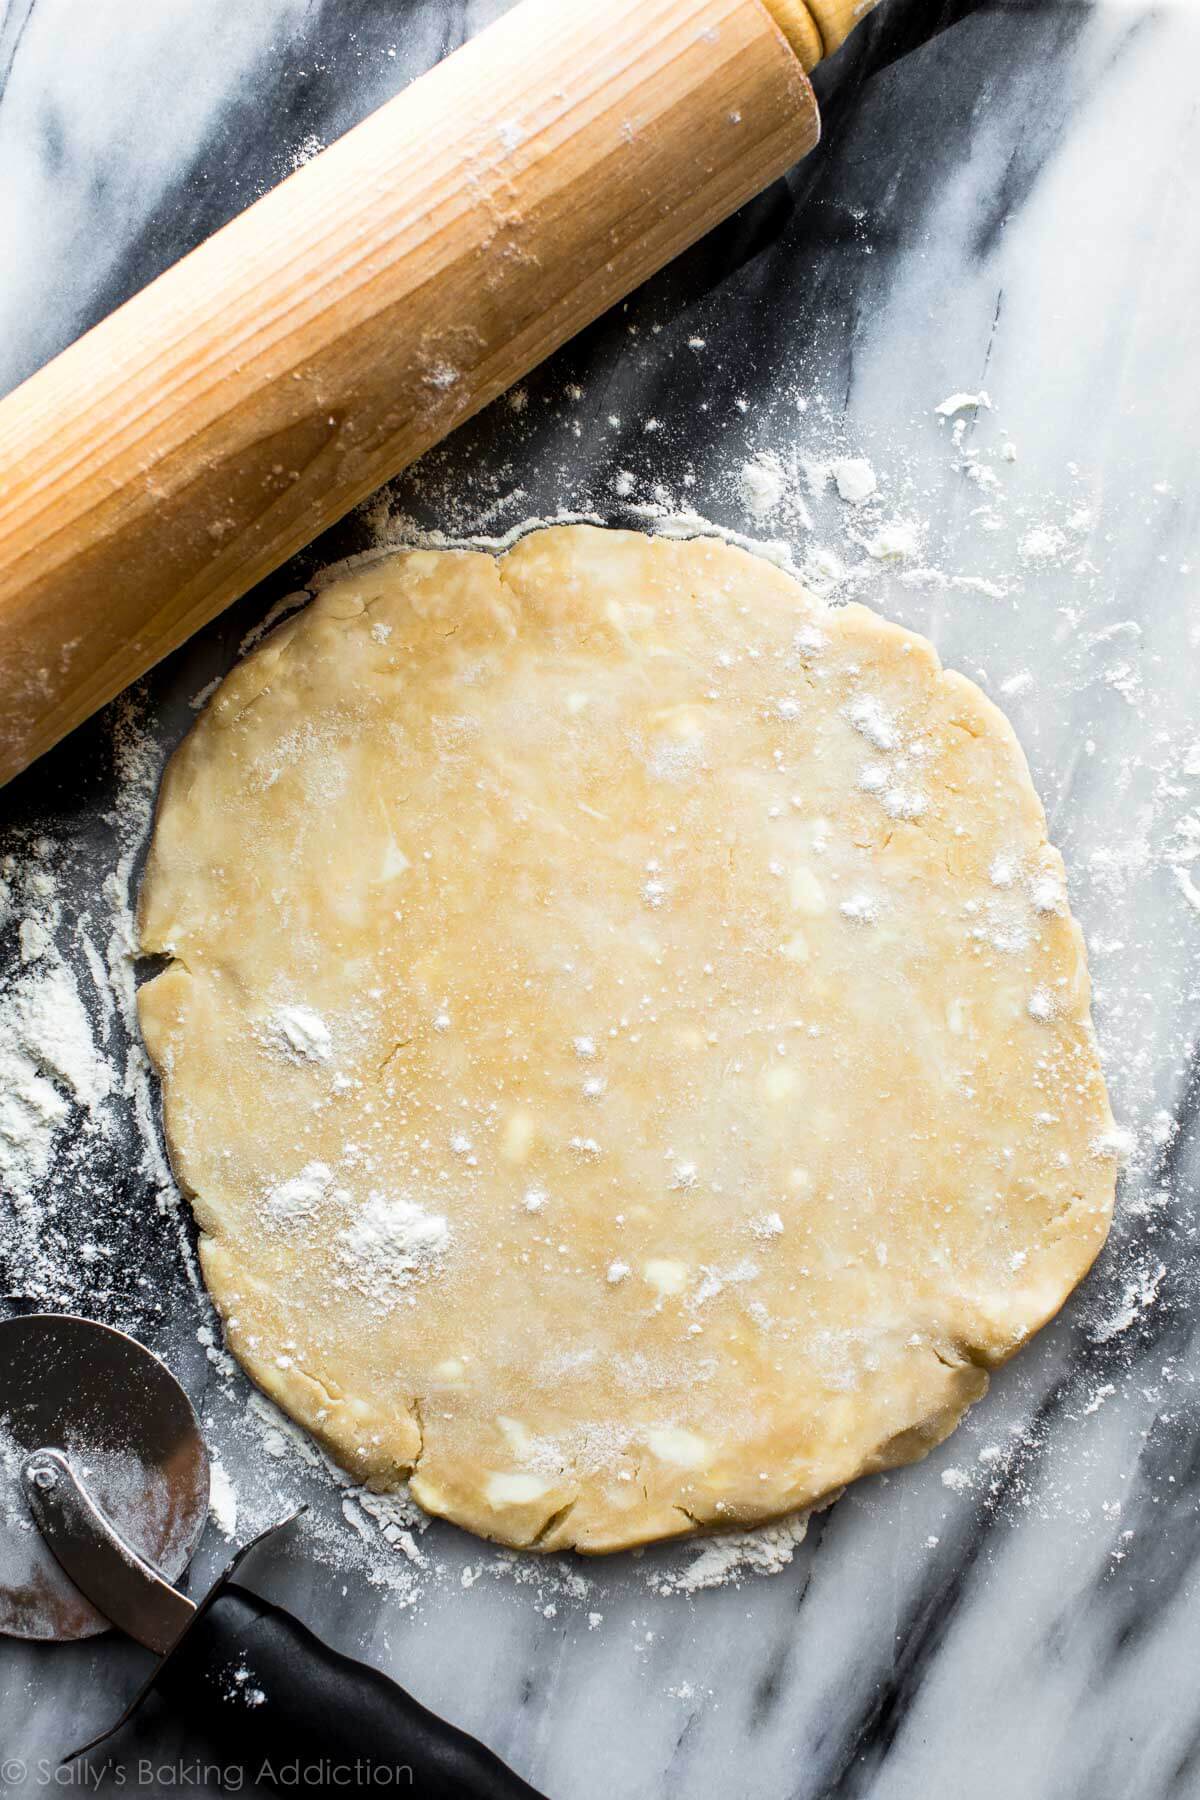 Recette de croûte de tarte feuilletée au beurre sur sallysbakingaddiction.com